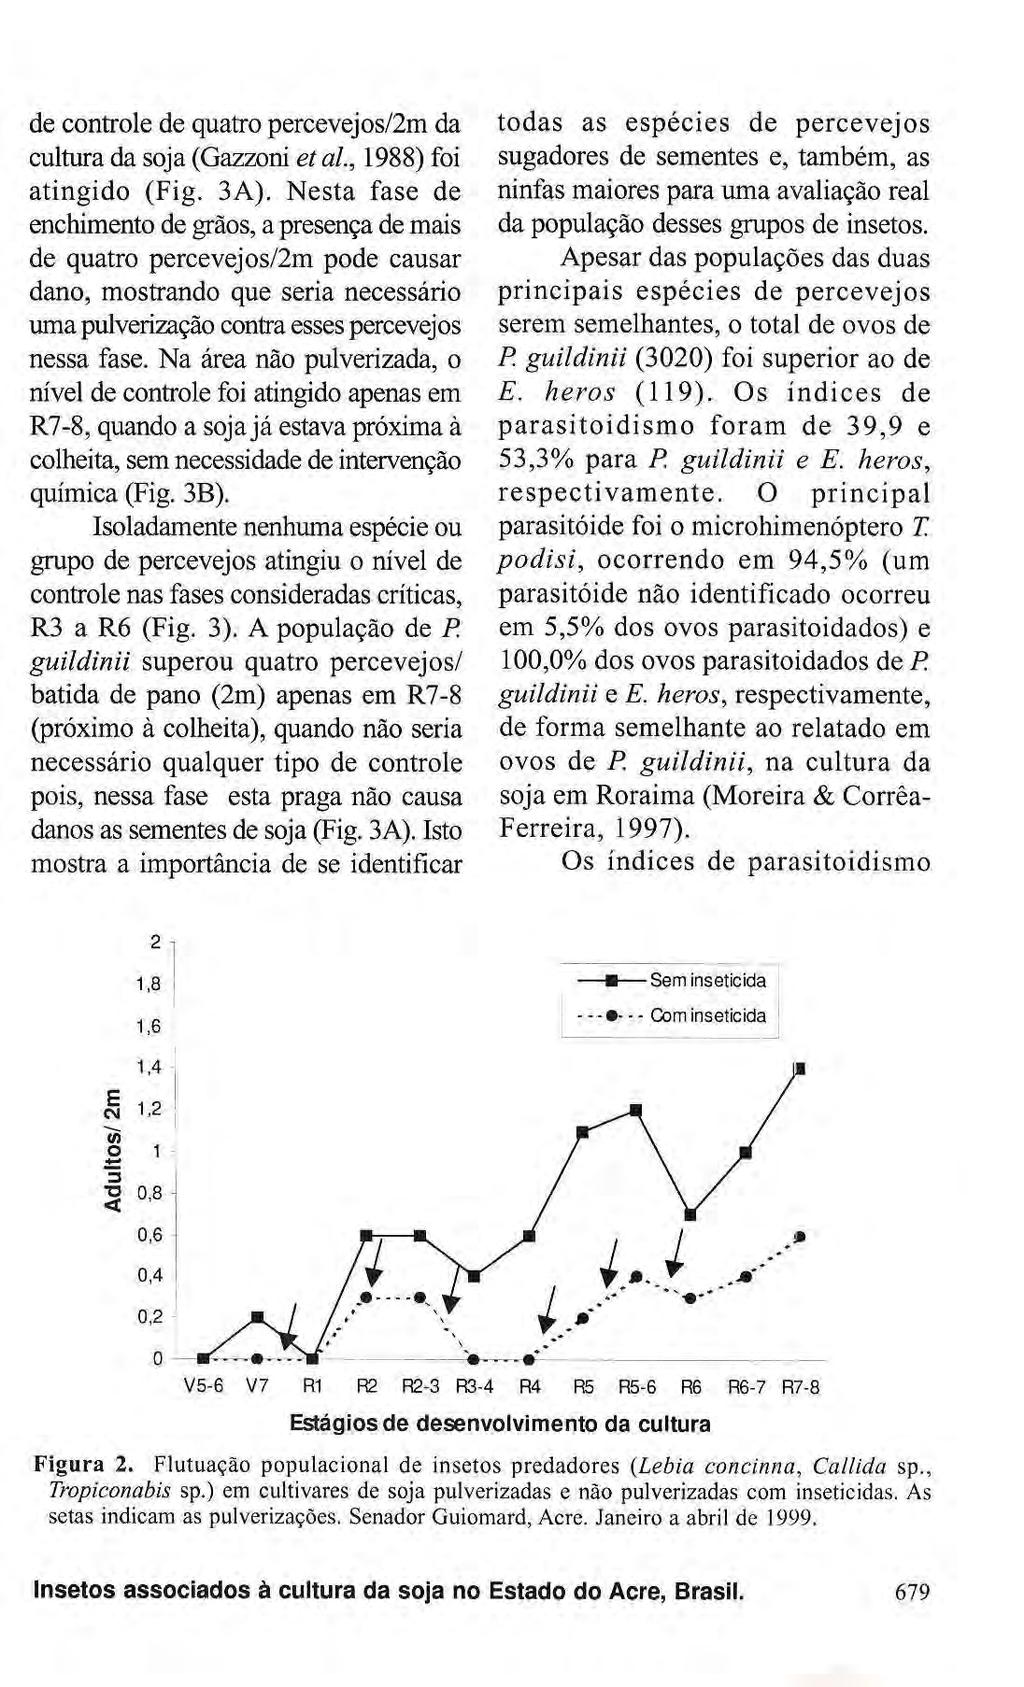 de controle de quatro percevejos/2m da cultura da soja (Gazzoni et al, 1988) foi atingido (Fig. 3A).